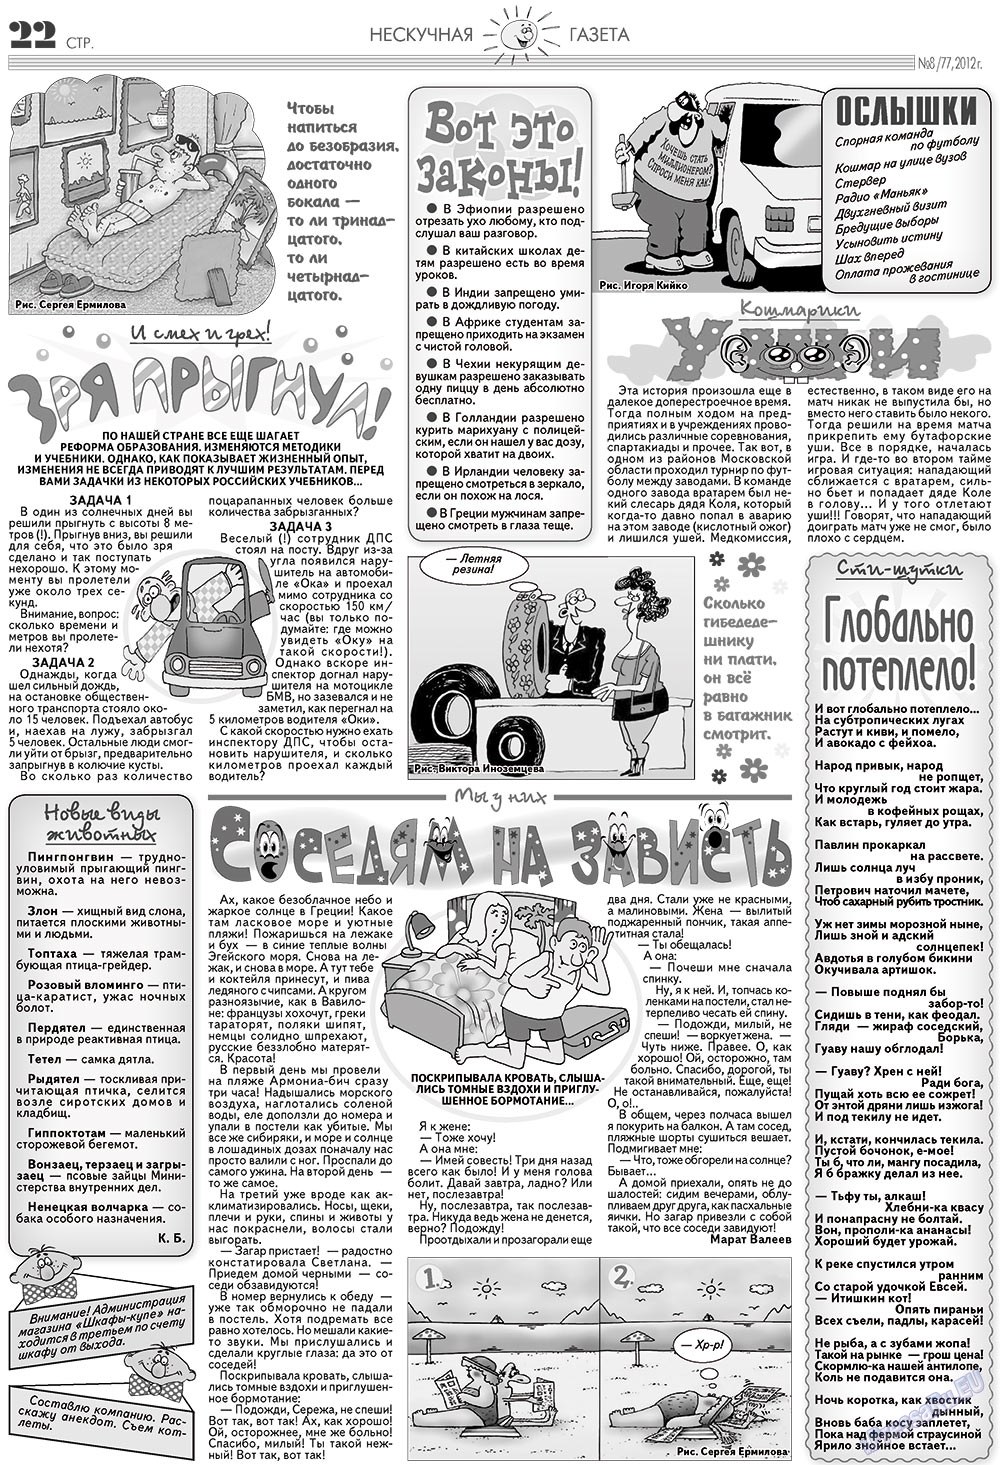 Нескучная газета (журнал). 2012 год, номер 8, стр. 22